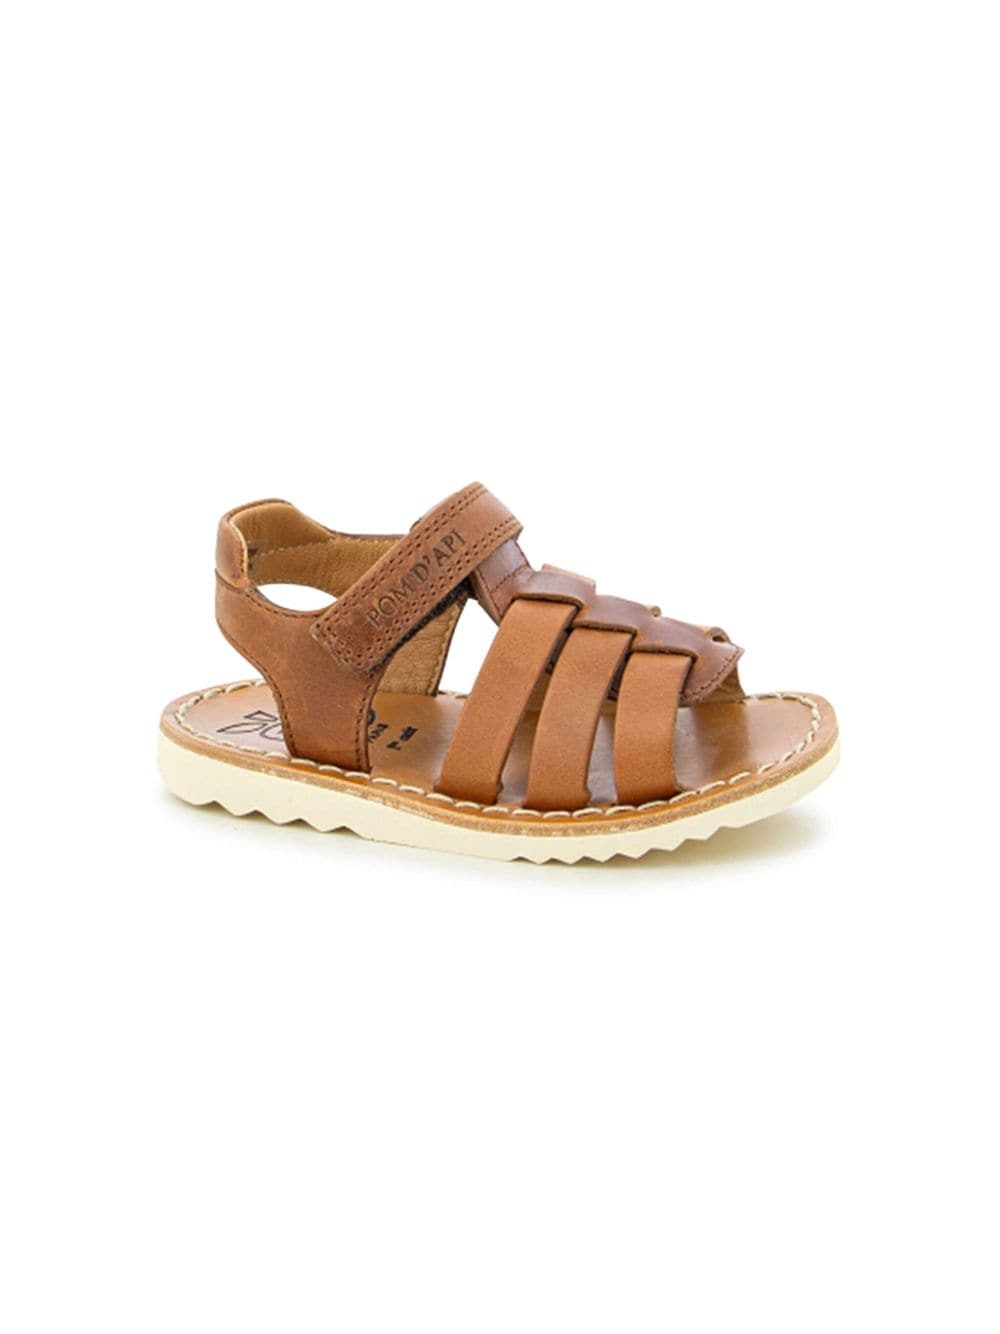 Pom D'api Waff New Boy leather sandals - Braun von Pom D'api